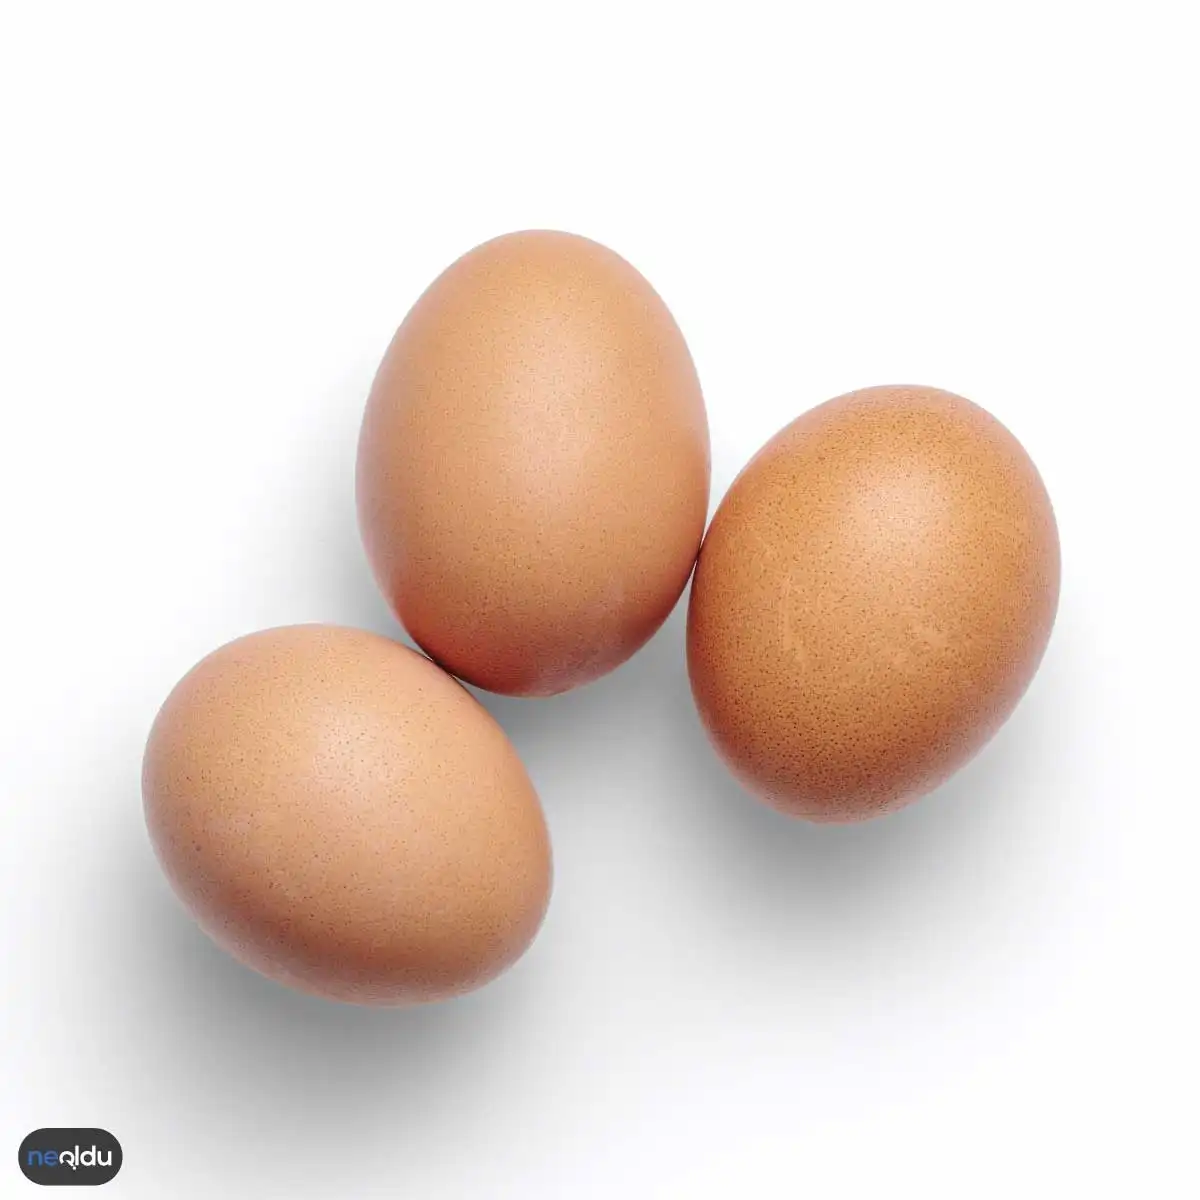 Yumurtanın Tazeliğini Anlama Yolları